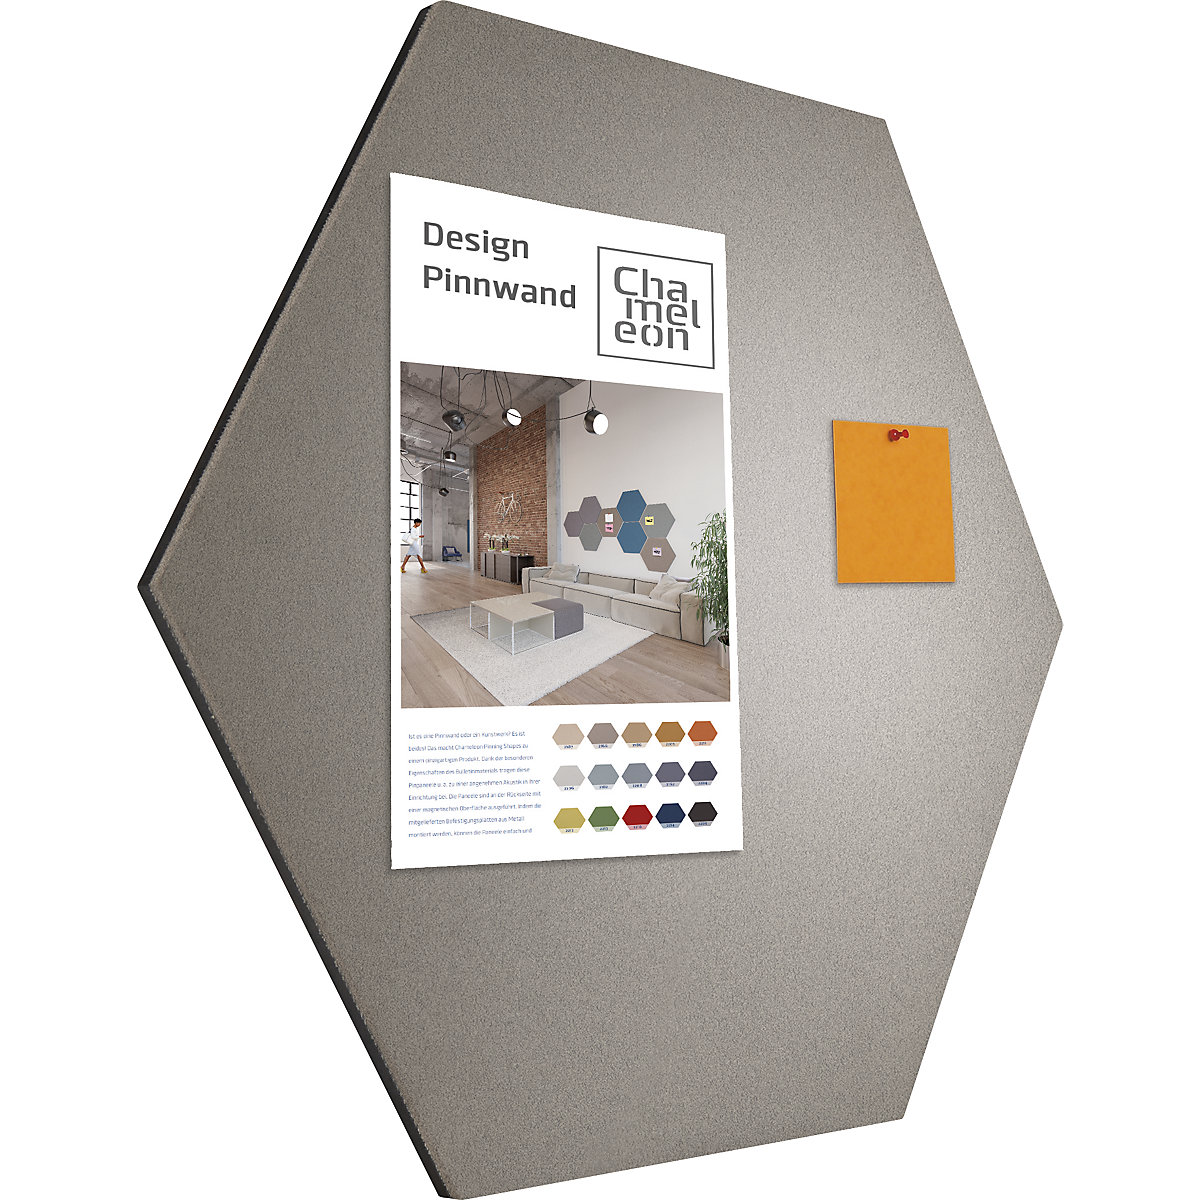 Hexagonal designer pin board – Chameleon (Product illustration 2)-1